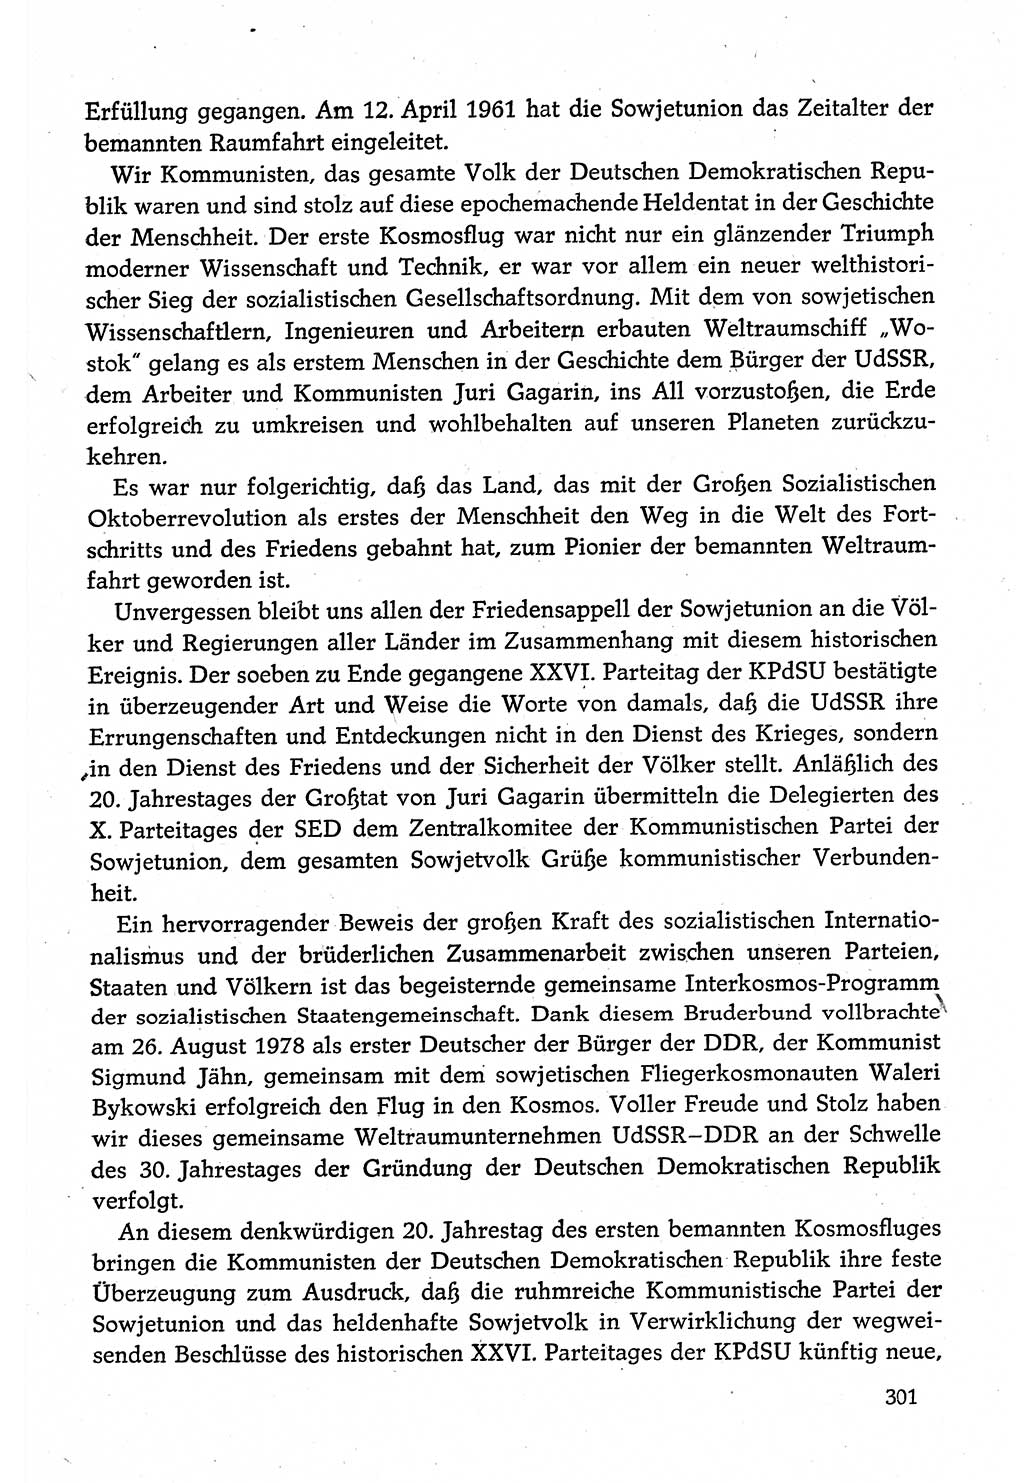 Dokumente der Sozialistischen Einheitspartei Deutschlands (SED) [Deutsche Demokratische Republik (DDR)] 1980-1981, Seite 301 (Dok. SED DDR 1980-1981, S. 301)